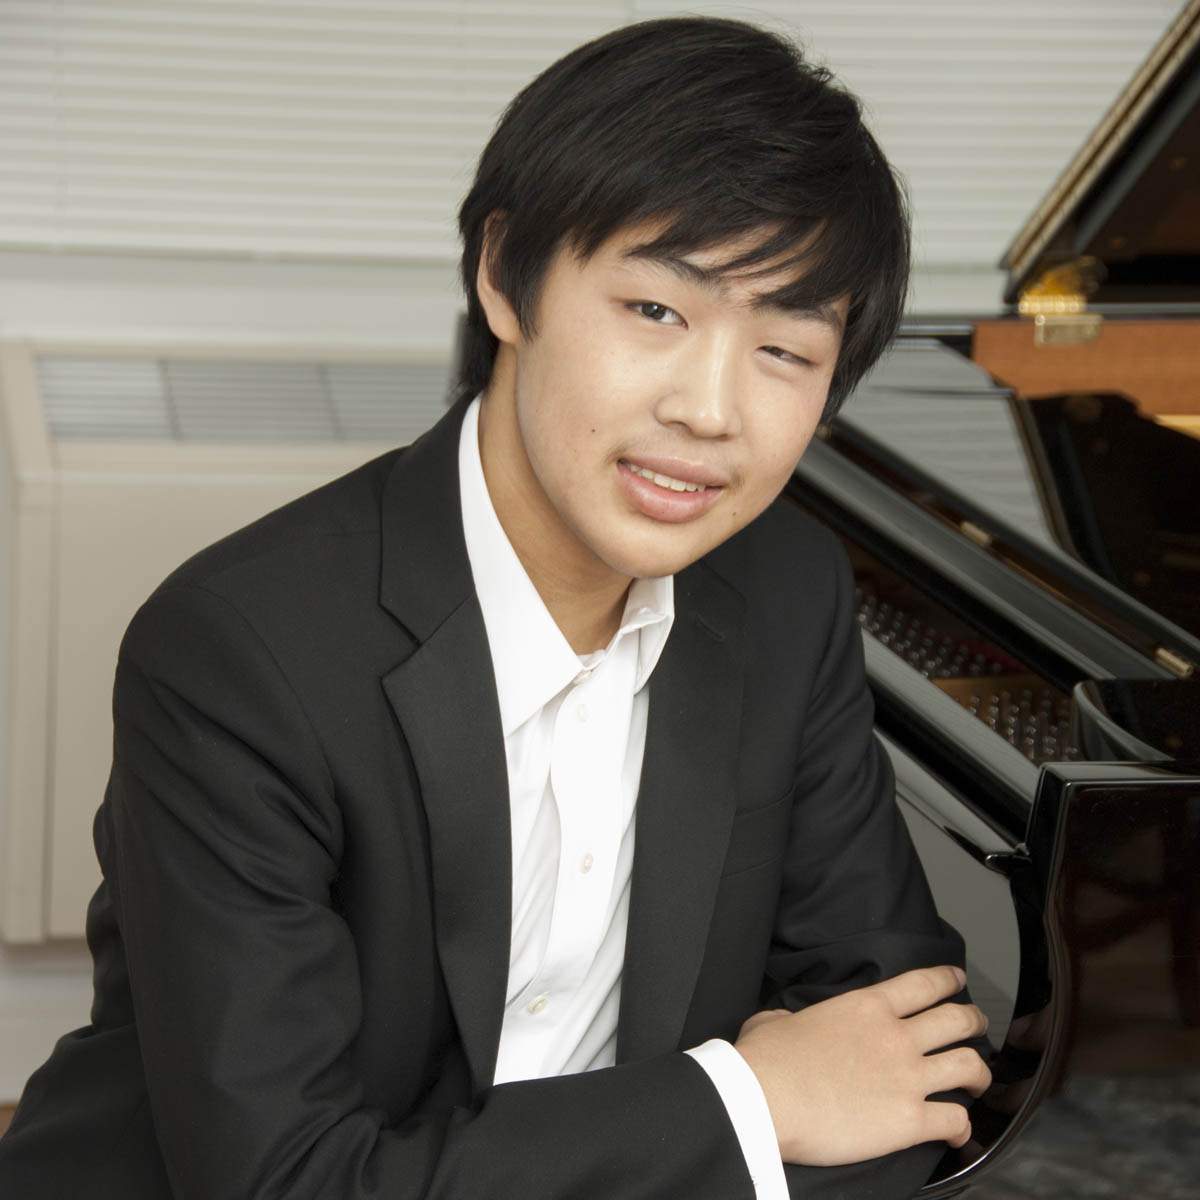 William Chen Solo Piano Recital